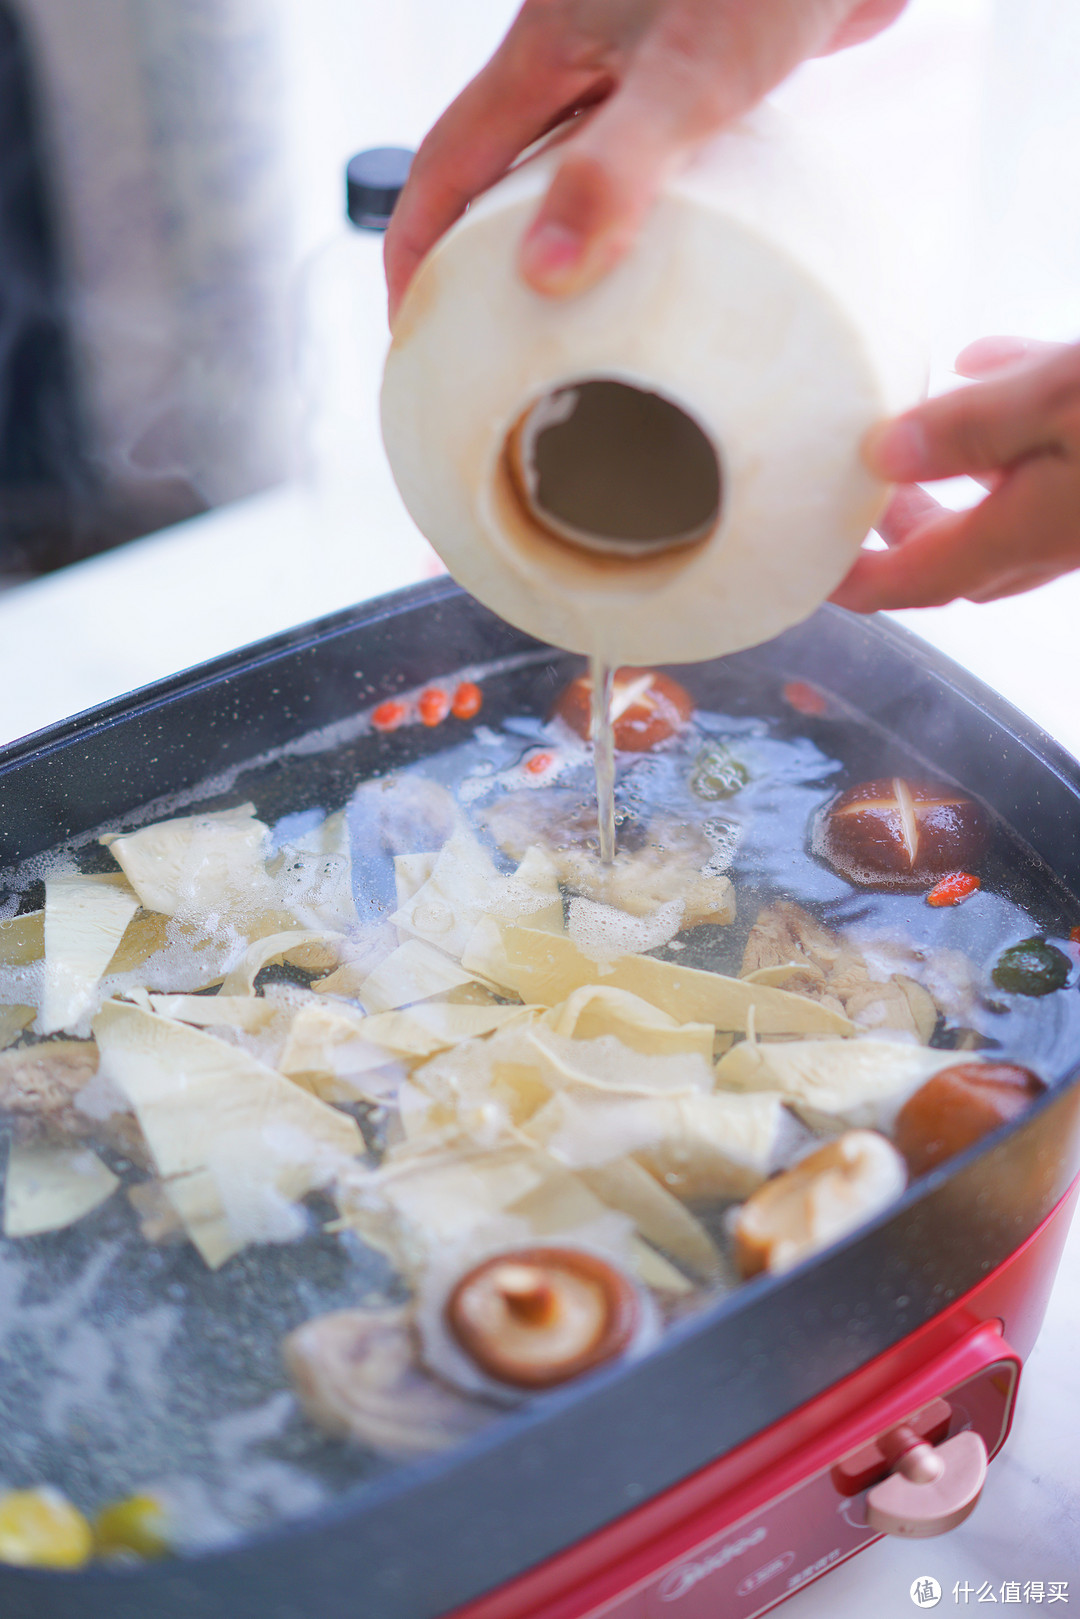 冬天吃火锅，全靠这口全能料理锅！美的 星球系列多功能料理锅